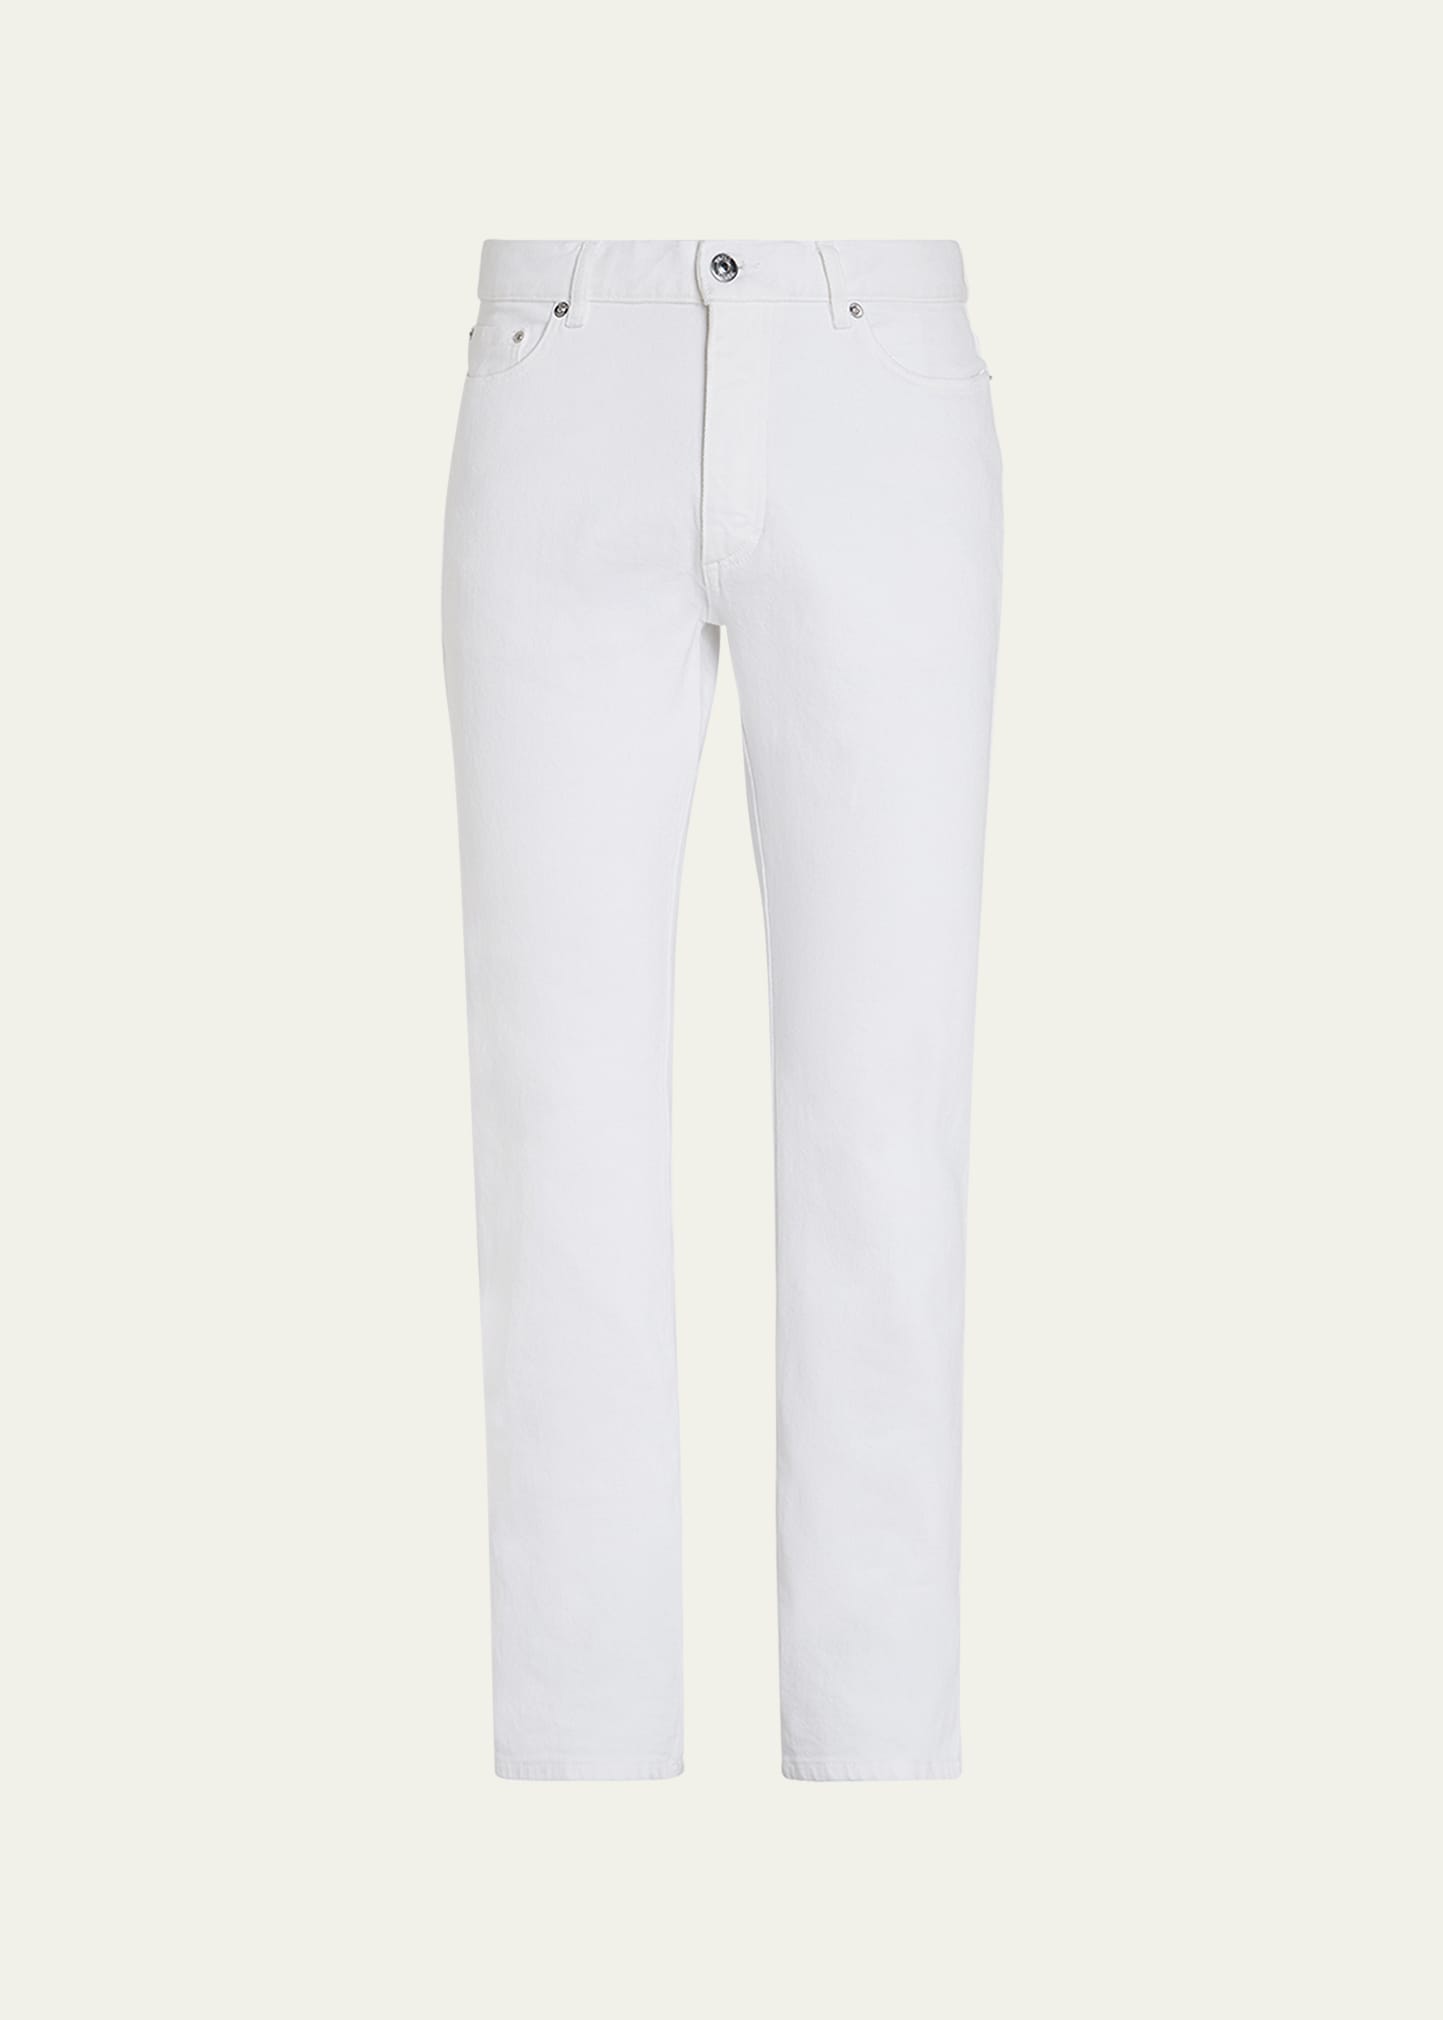 Zegna Men's Straight Leg Denim 5-pocket Pants In White Solid